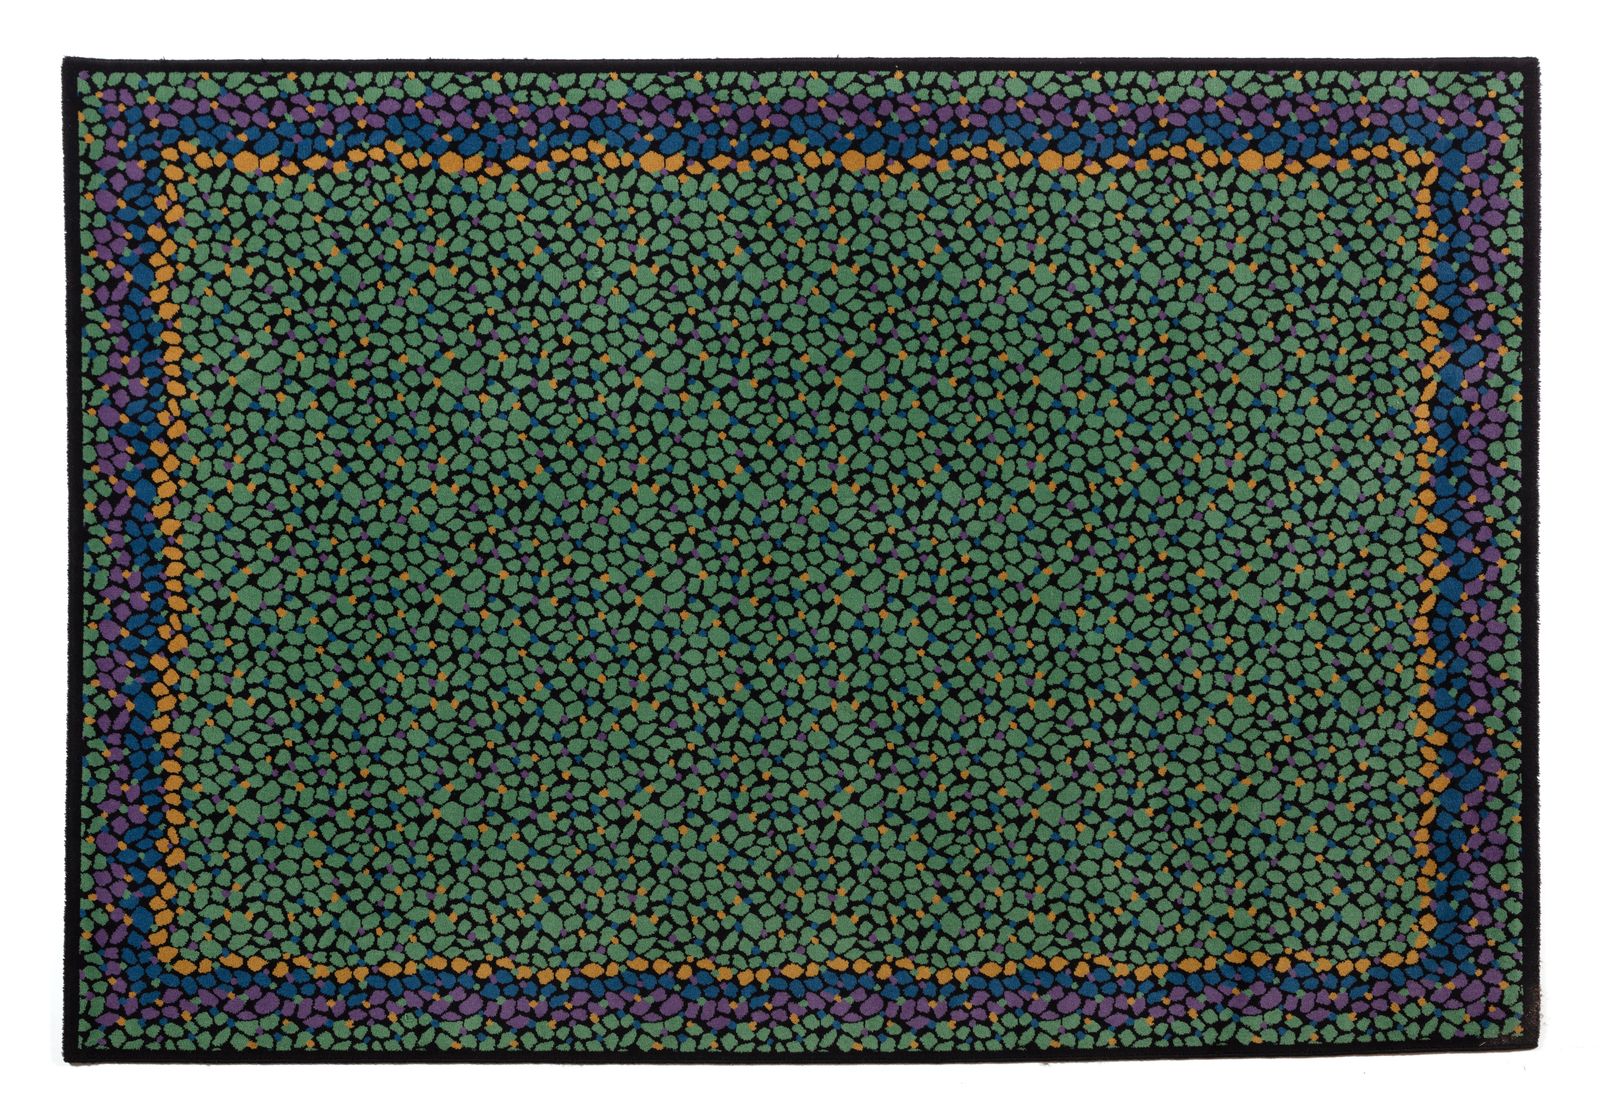 MISSONI 姆索尼.T&J Vestor的地毯.制造标签，1980年代。厘米162,00 x 245,00。